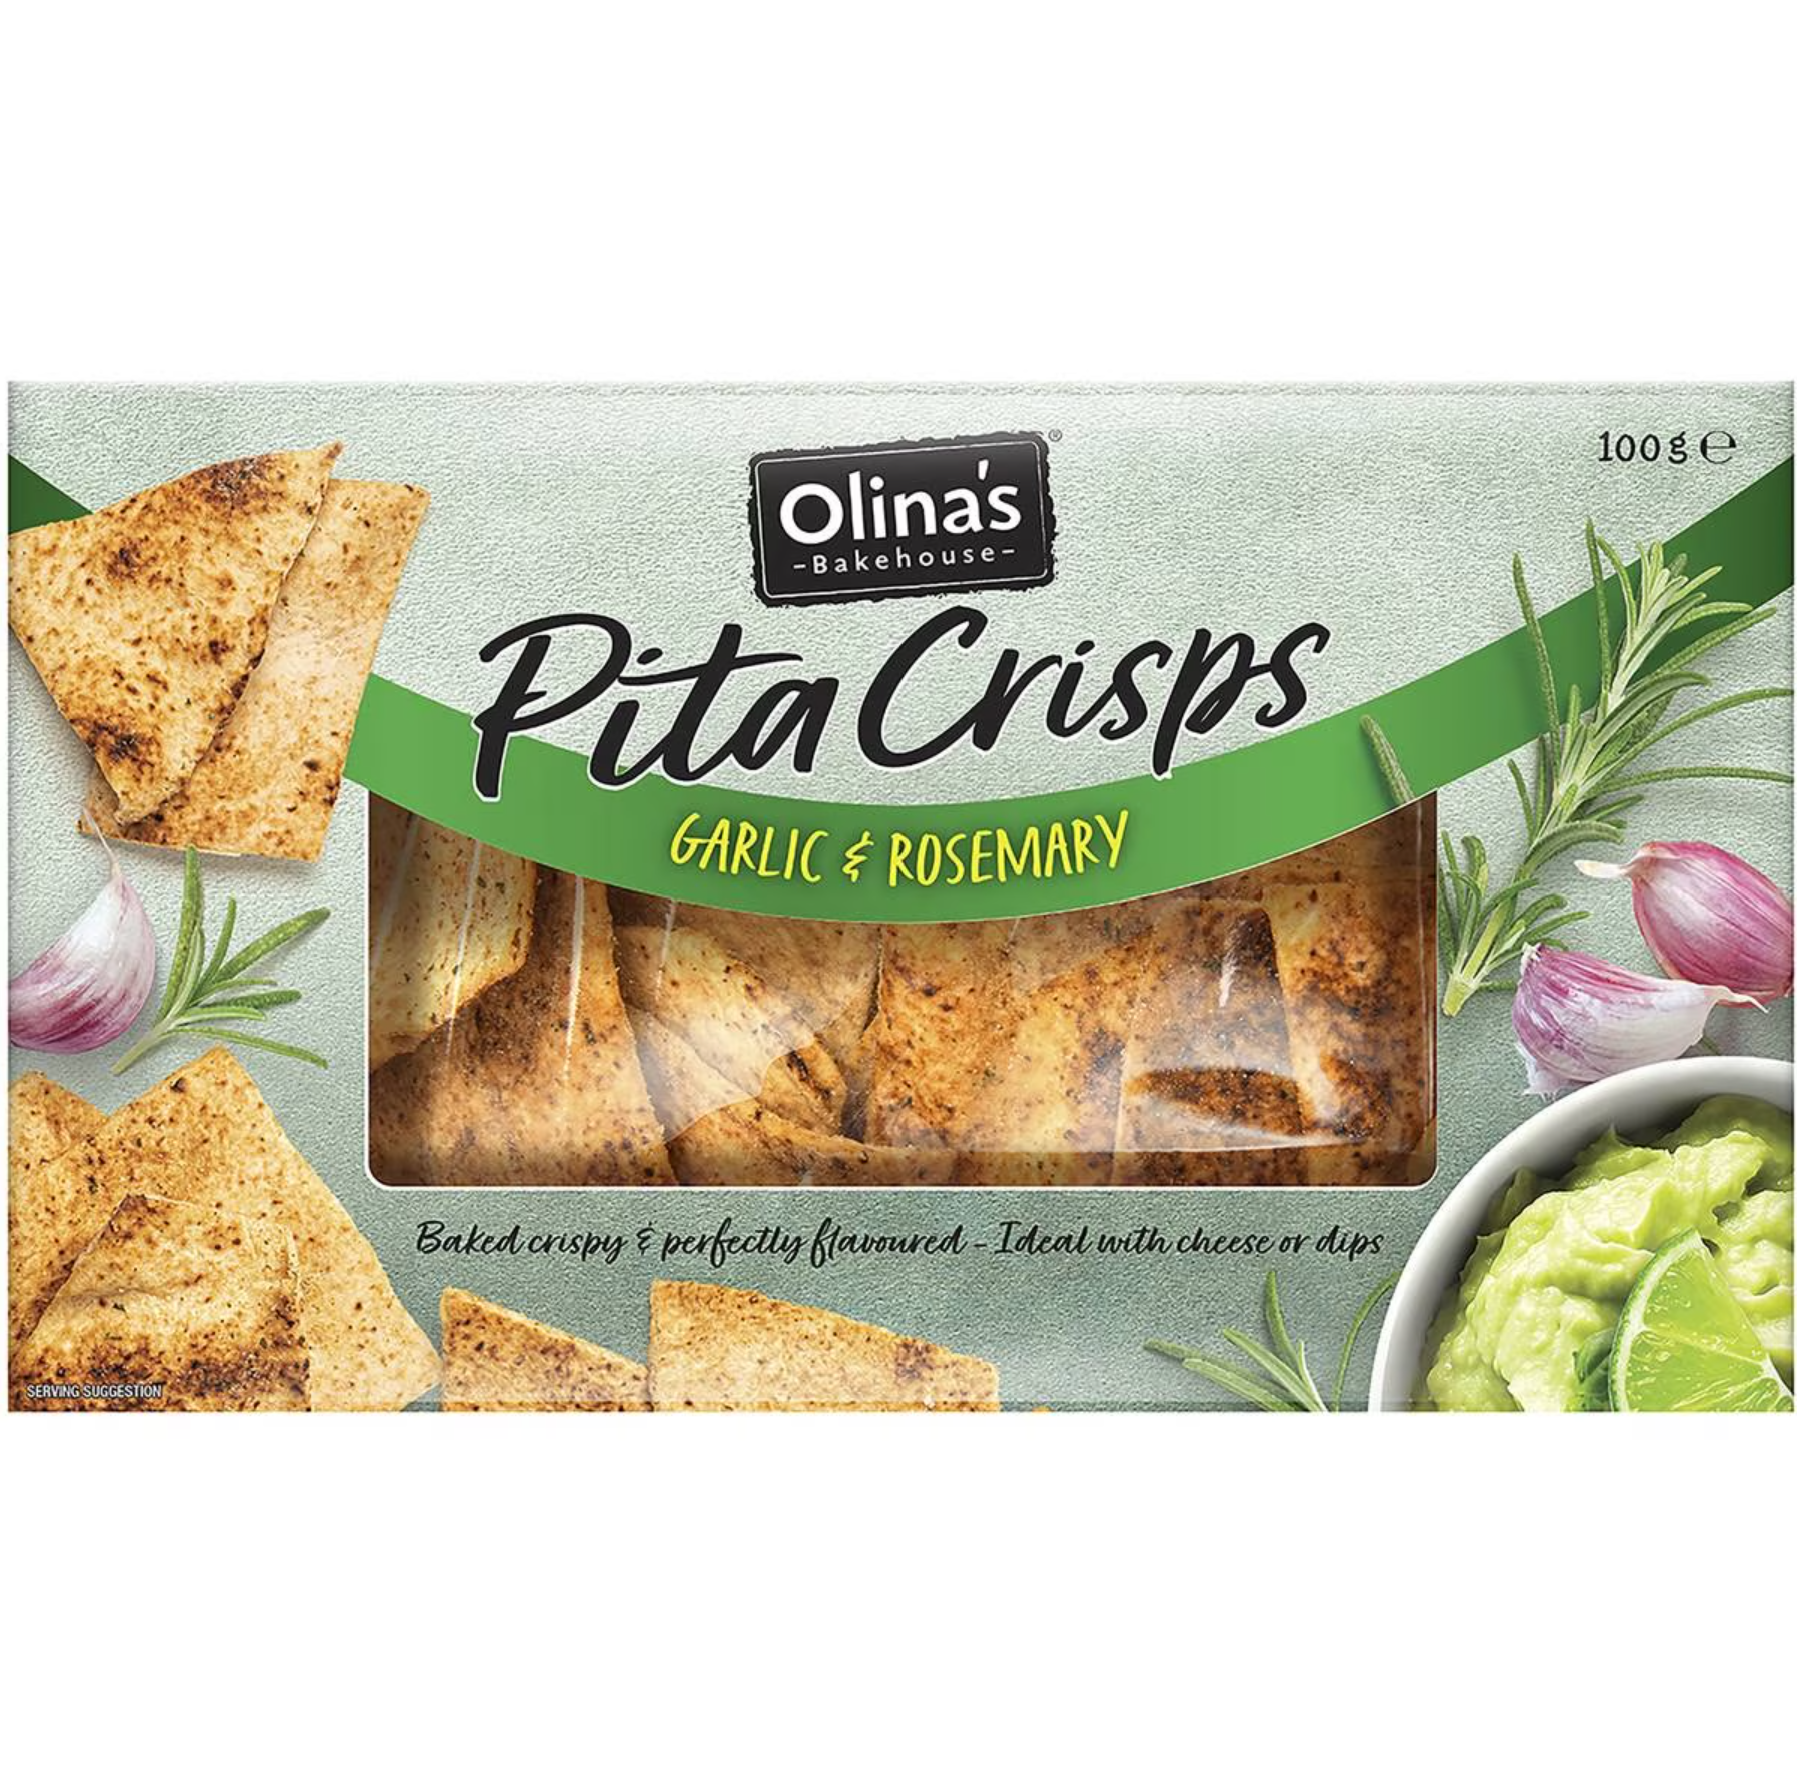 Olinas Pita Crisps Garlic & Rosemary 100g